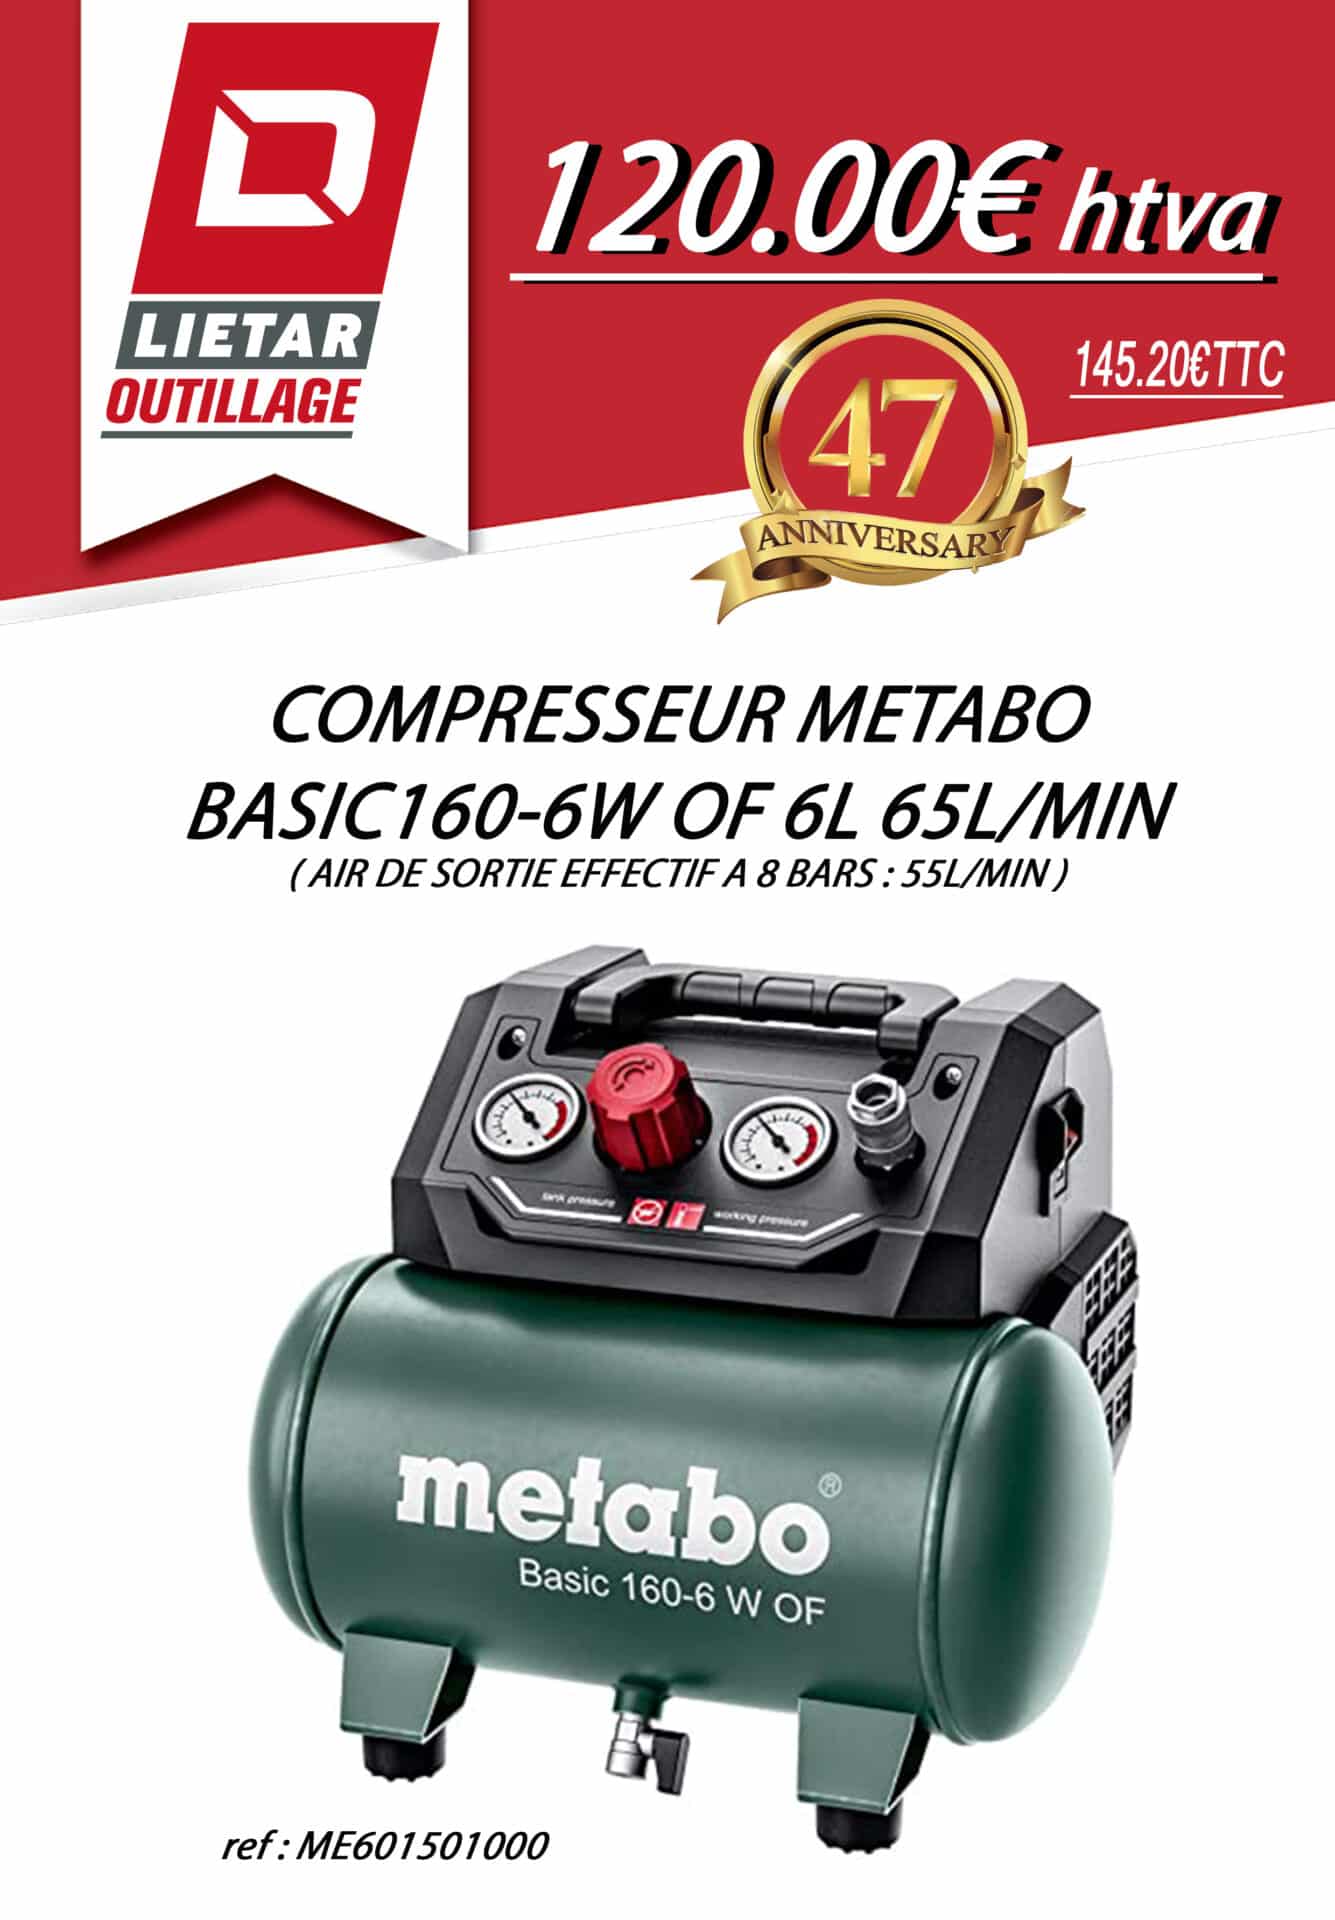 Compresseur Metabo